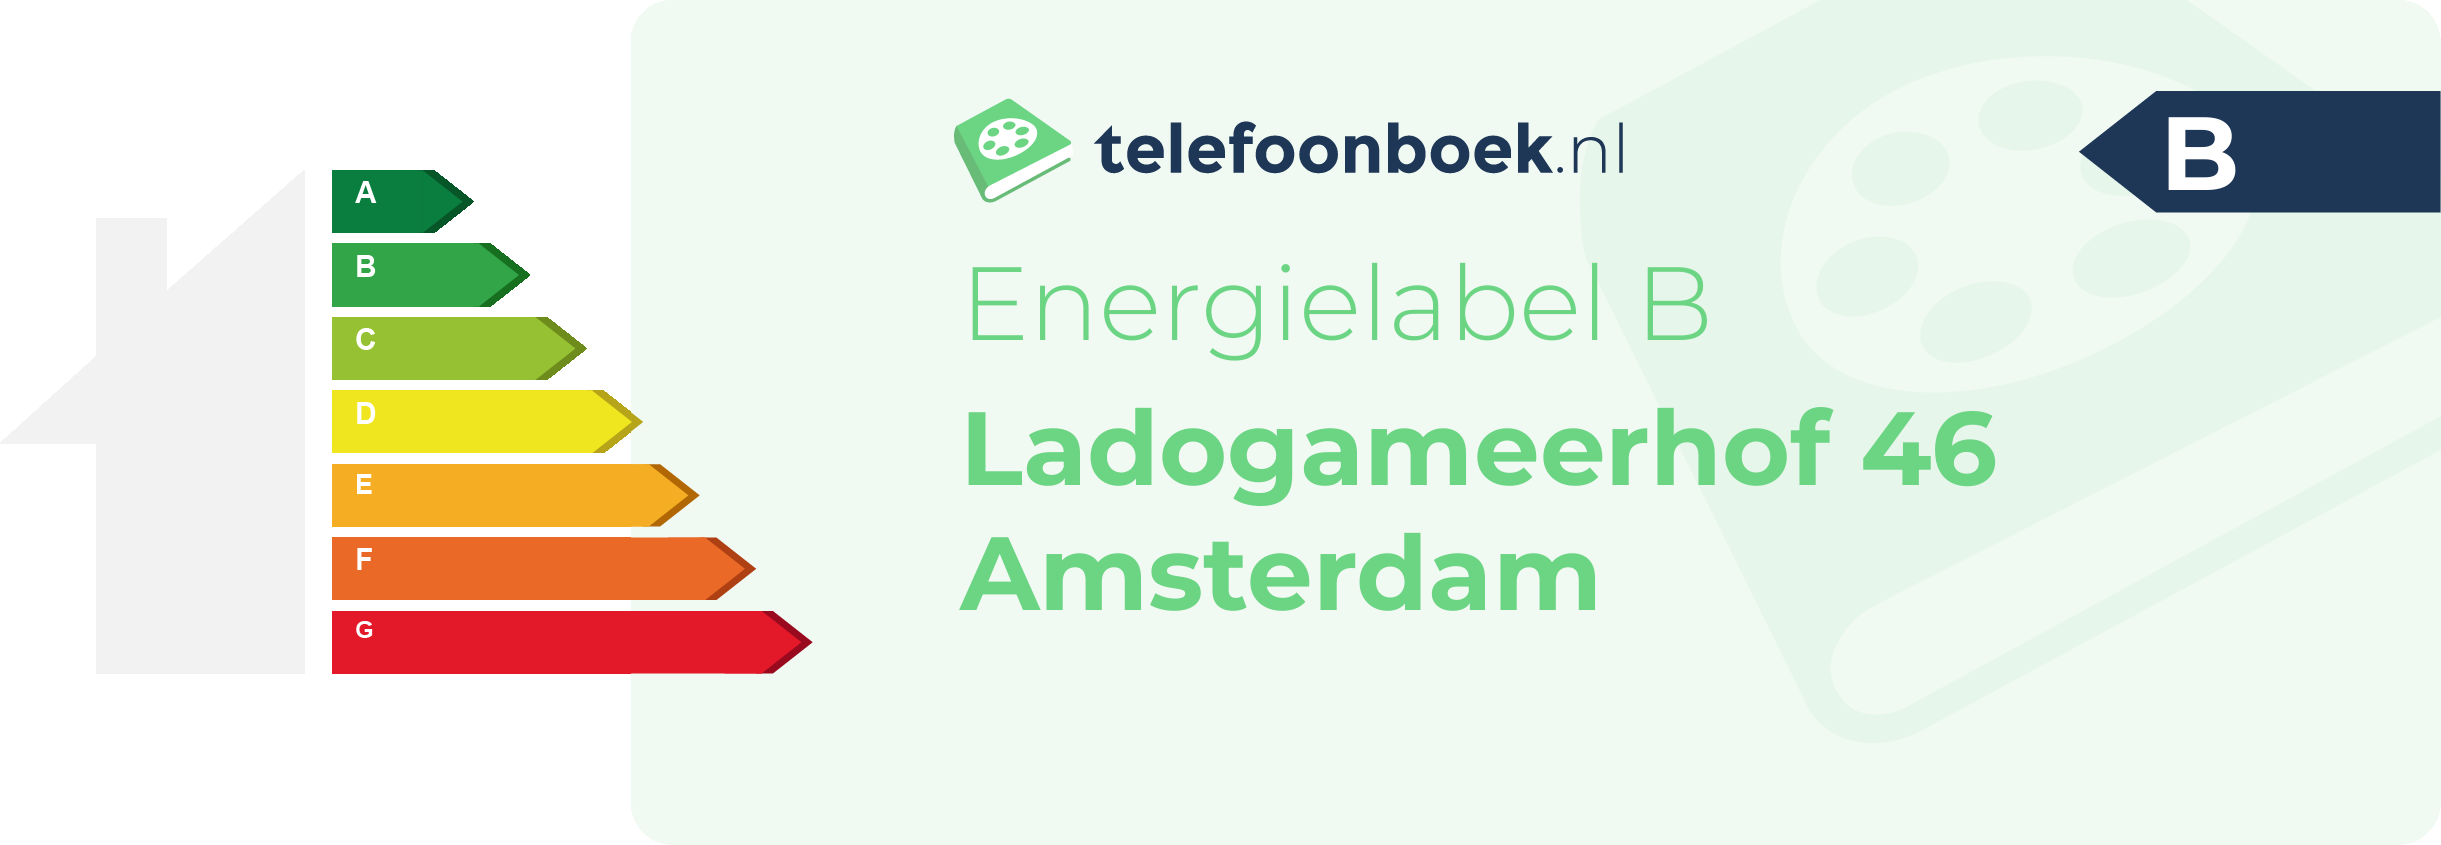 Energielabel Ladogameerhof 46 Amsterdam